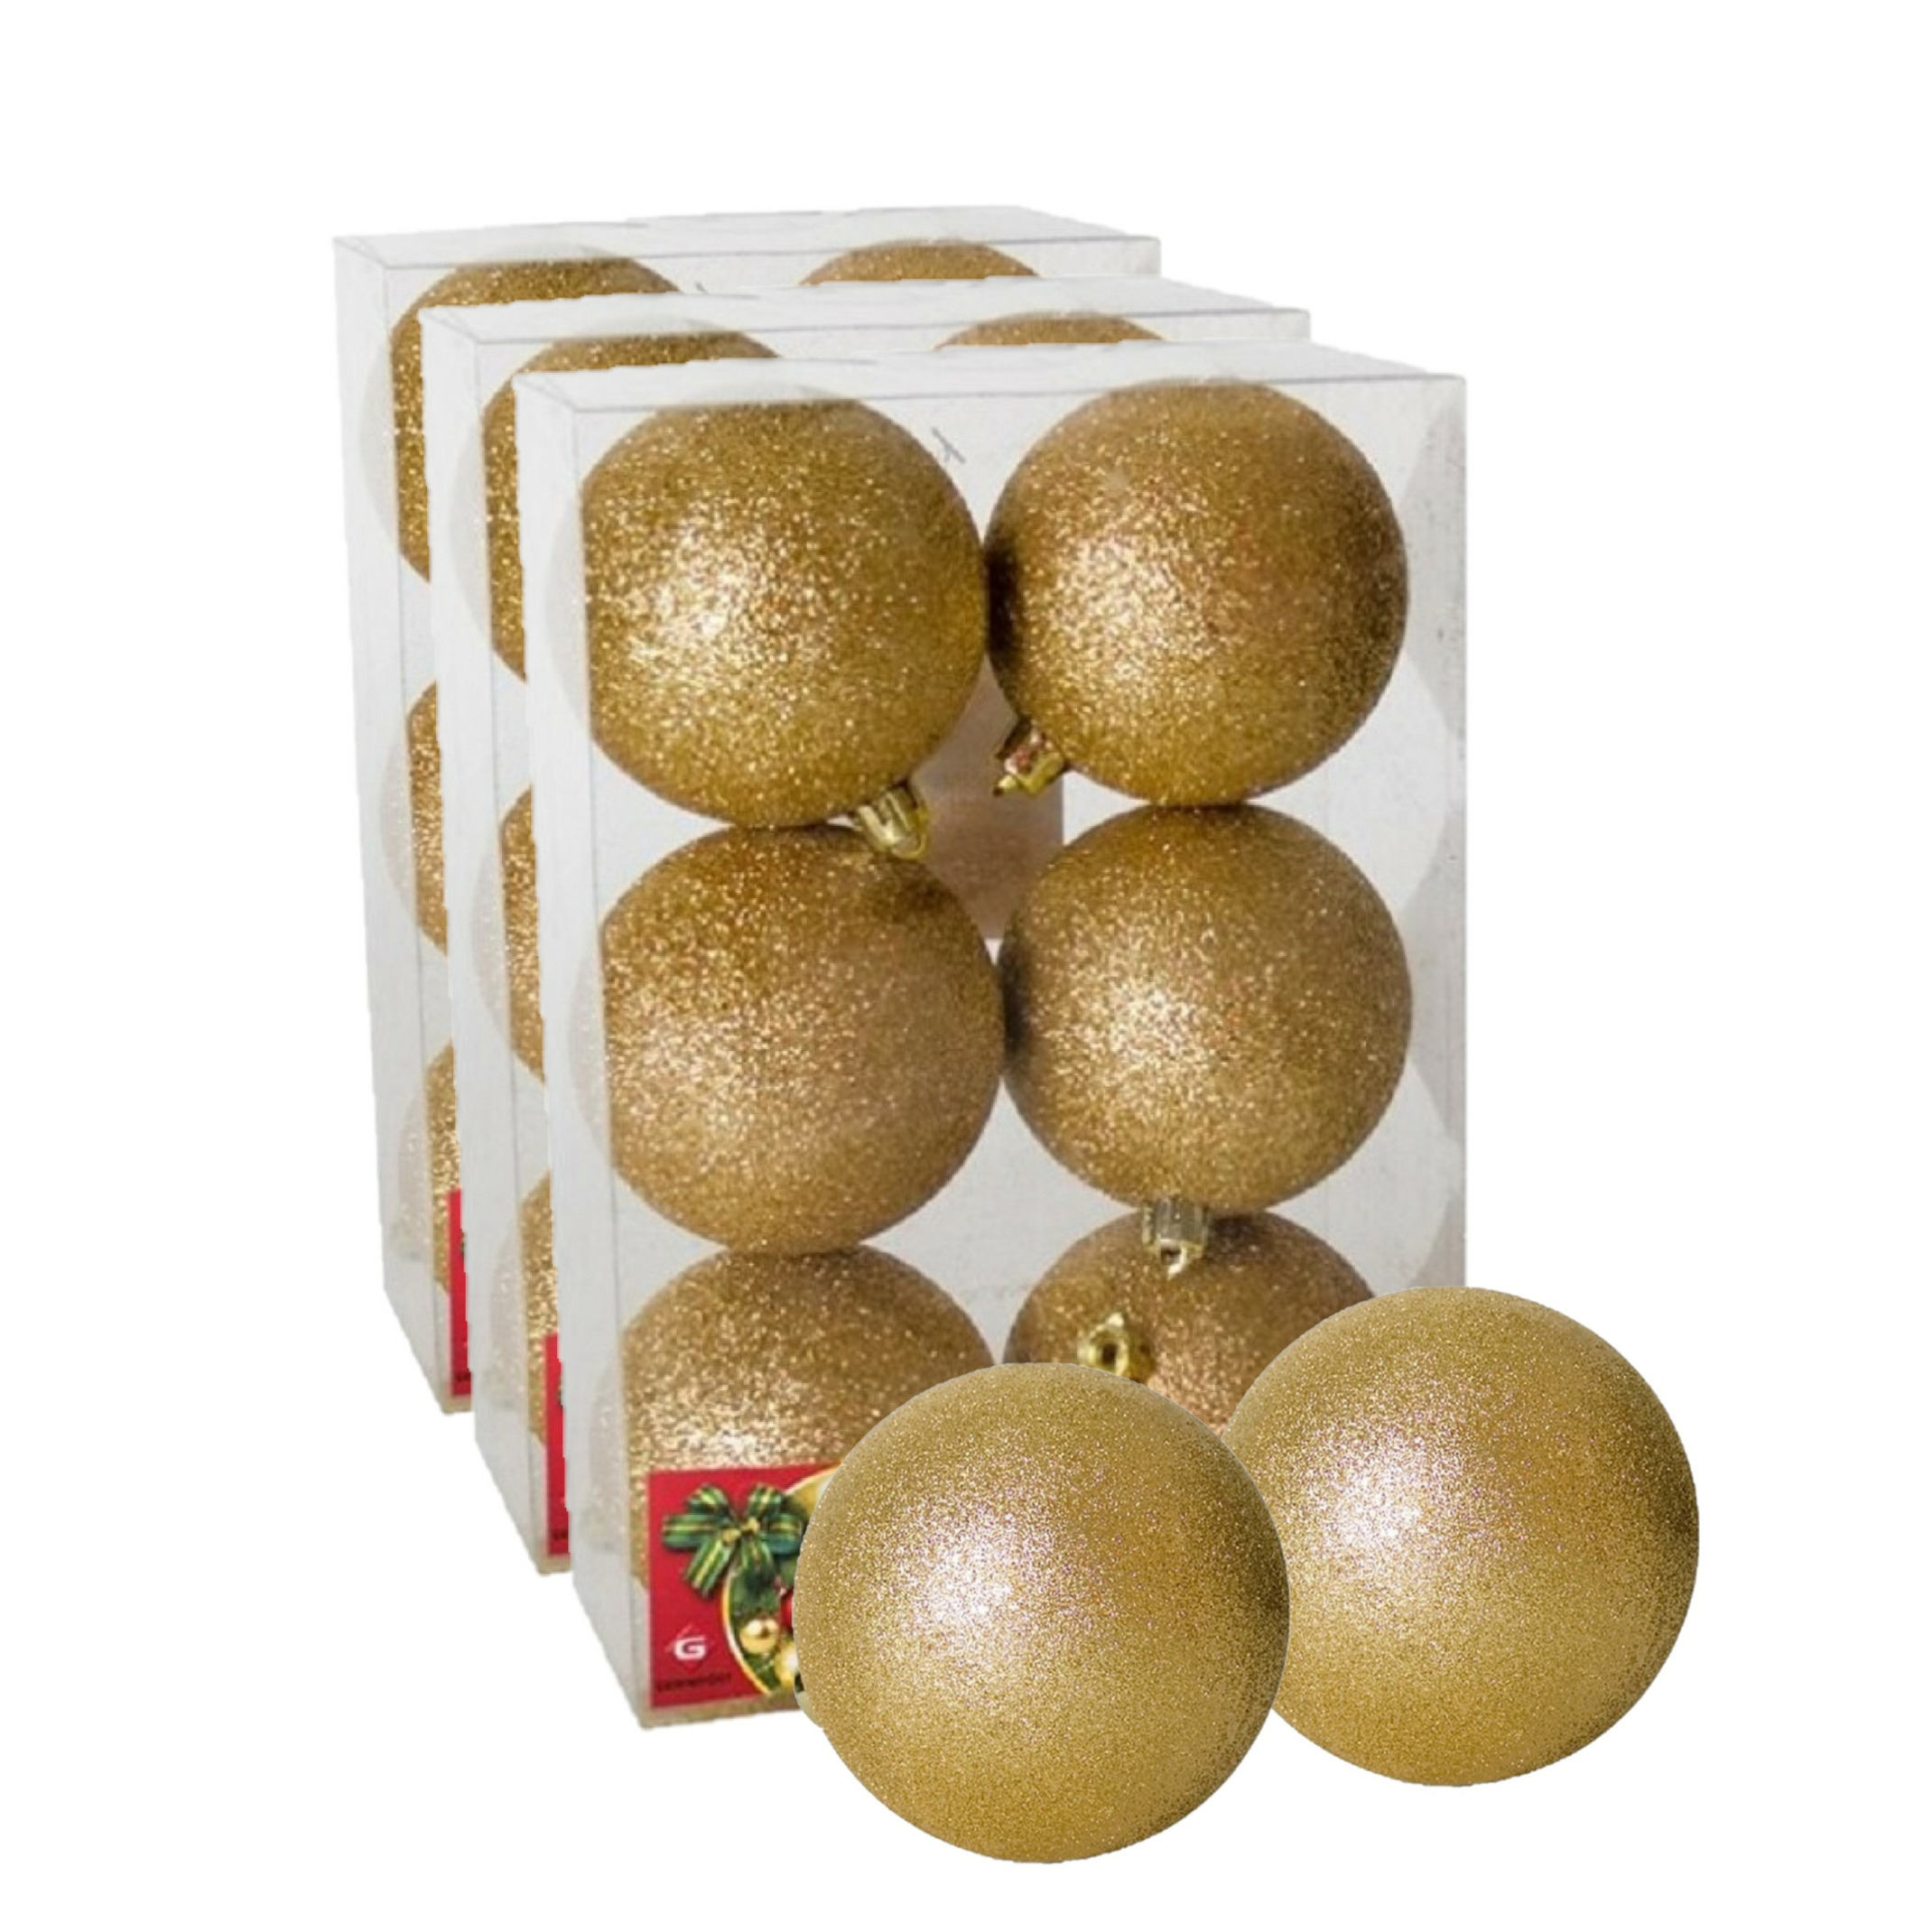 18x stuks kerstballen goud glitters kunststof 8 cm